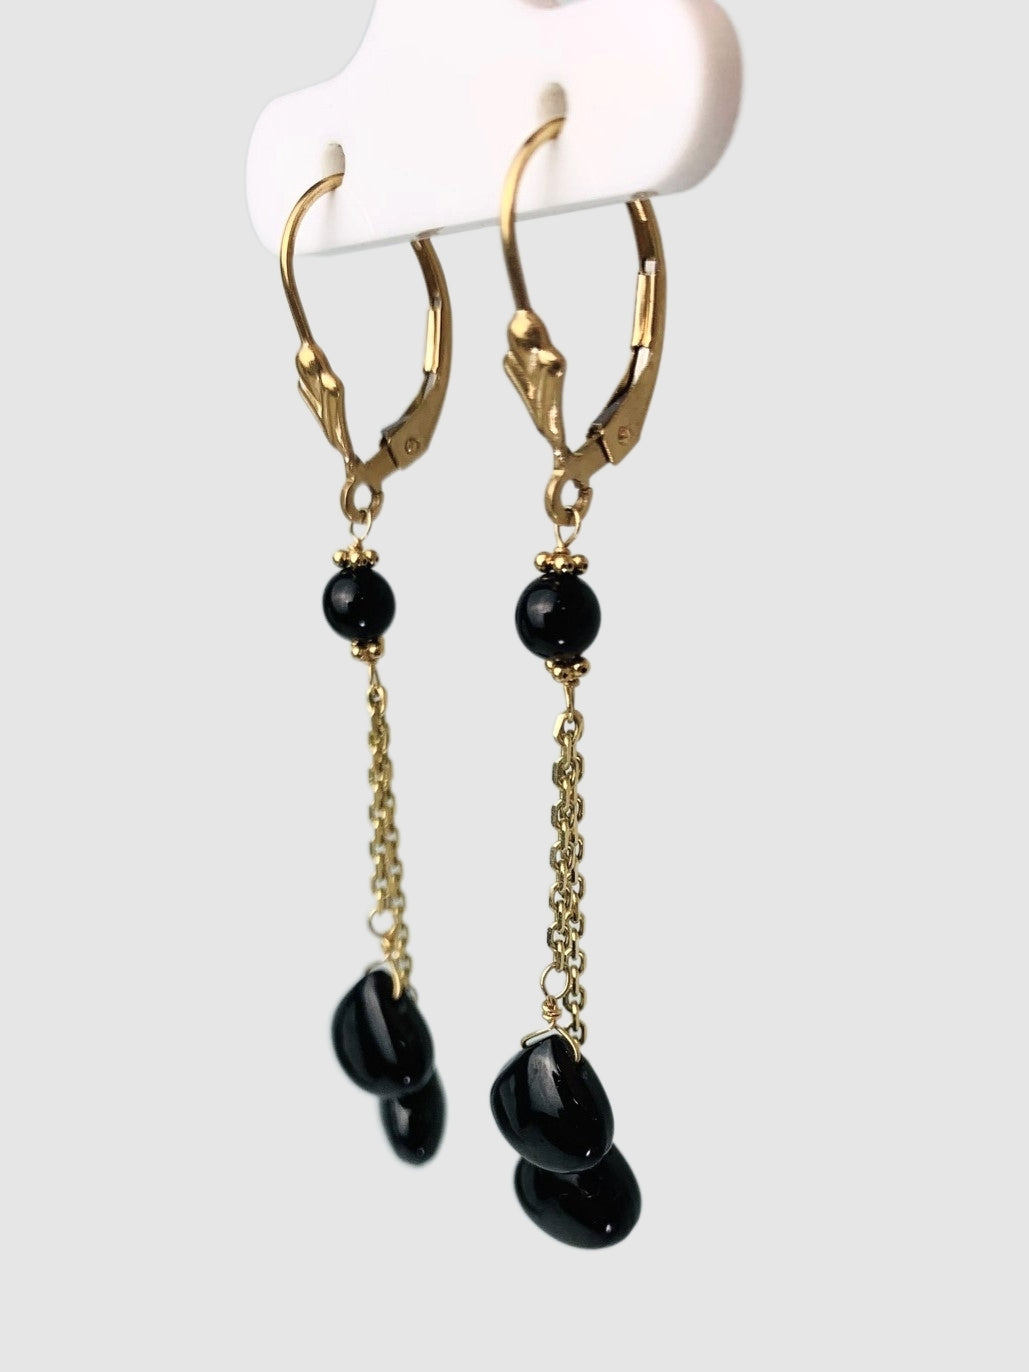 Onyx Lariat Earrings in 14KY - EAR-109-LARGM14Y-OX